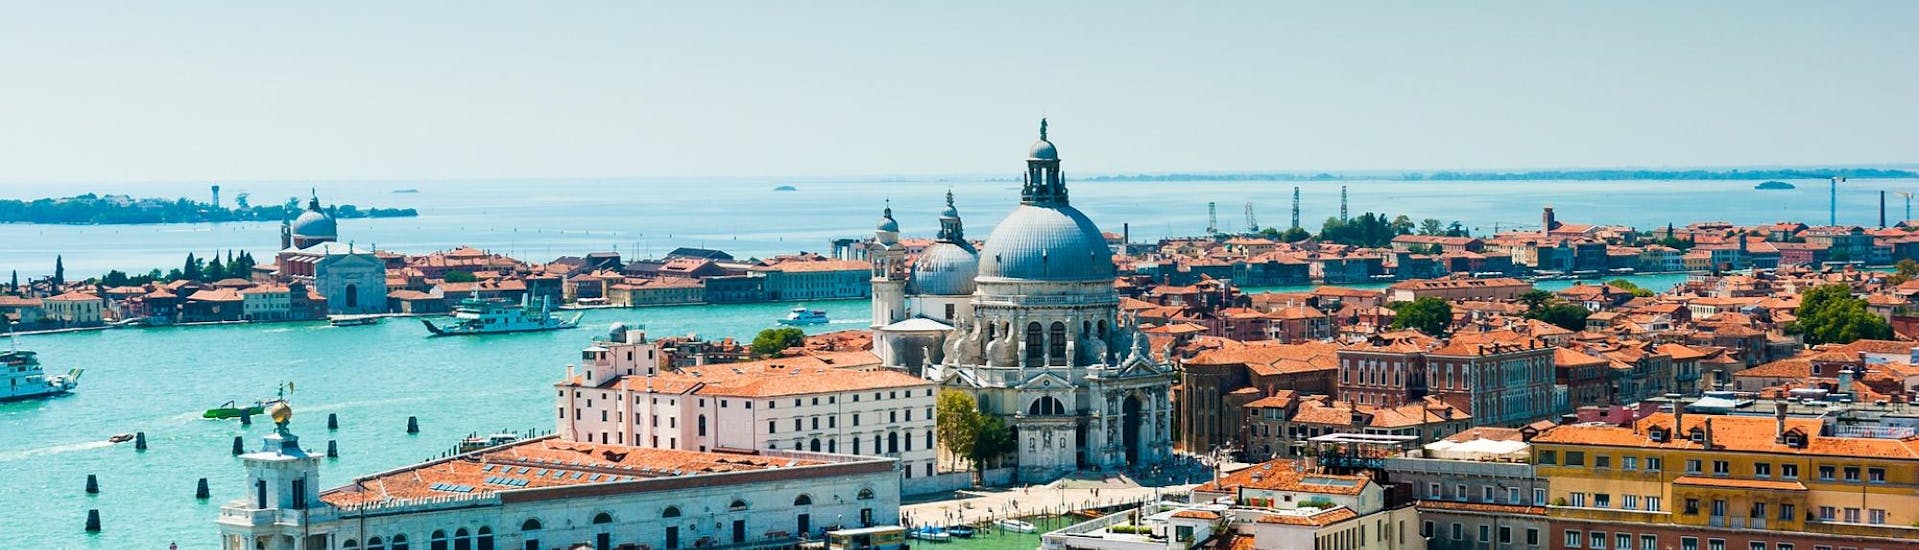 Vista aerea di Venezia, che si può visitare grazie al Transfer in barca a Venezia da Punta Sabbioni con Il Doge di Venezia.